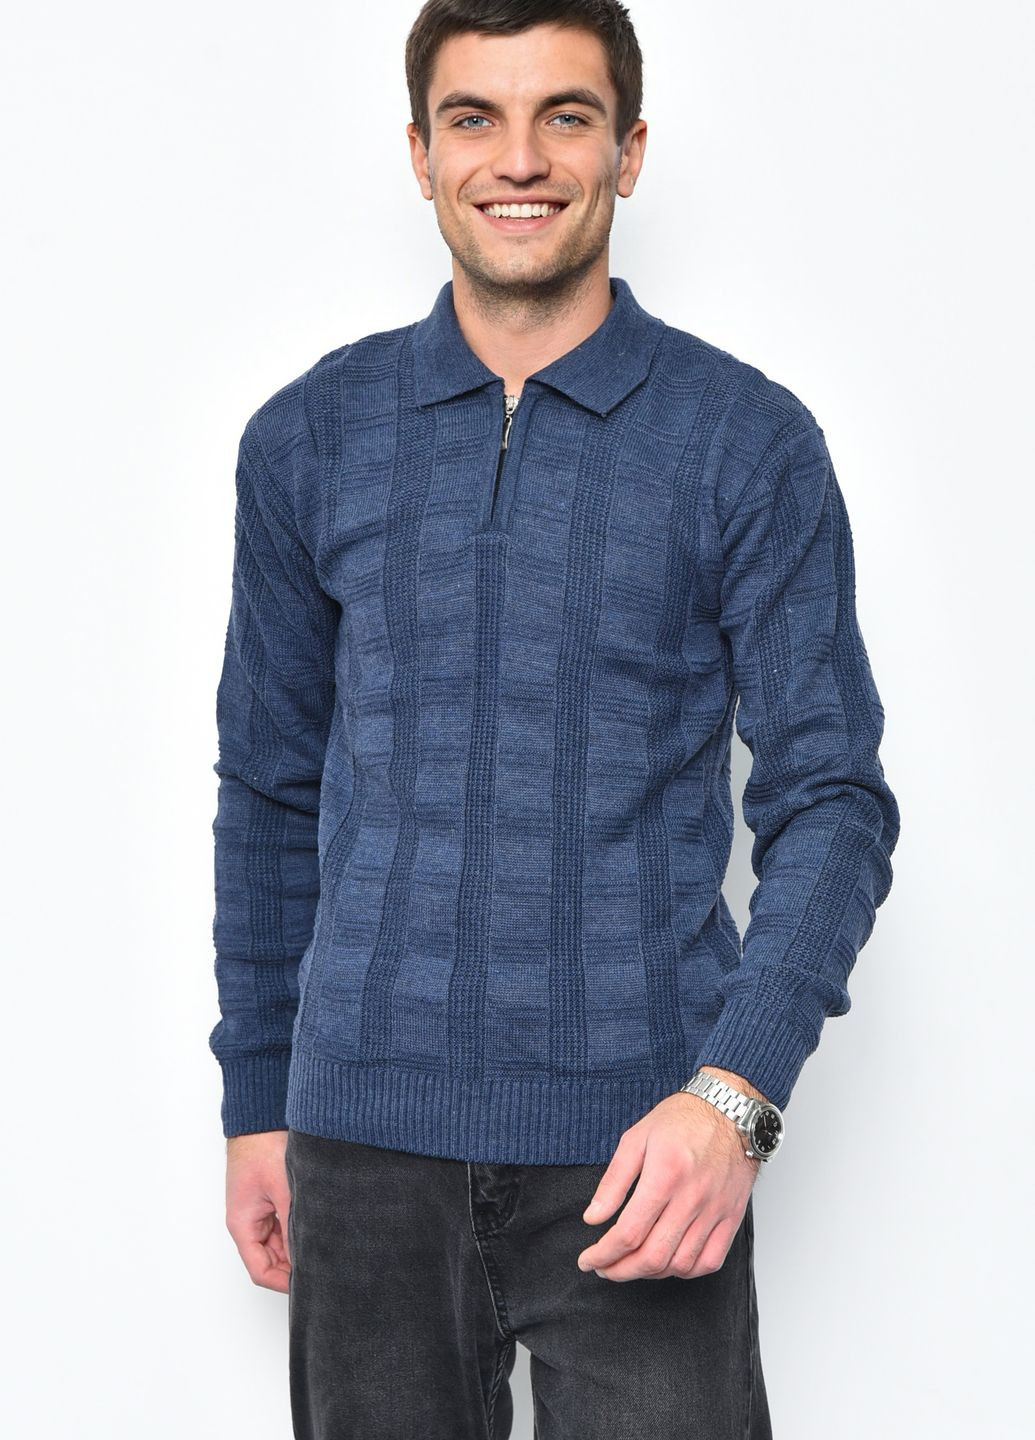 Синий демисезонный свитер мужской синего цвета акриловый пуловер Let's Shop